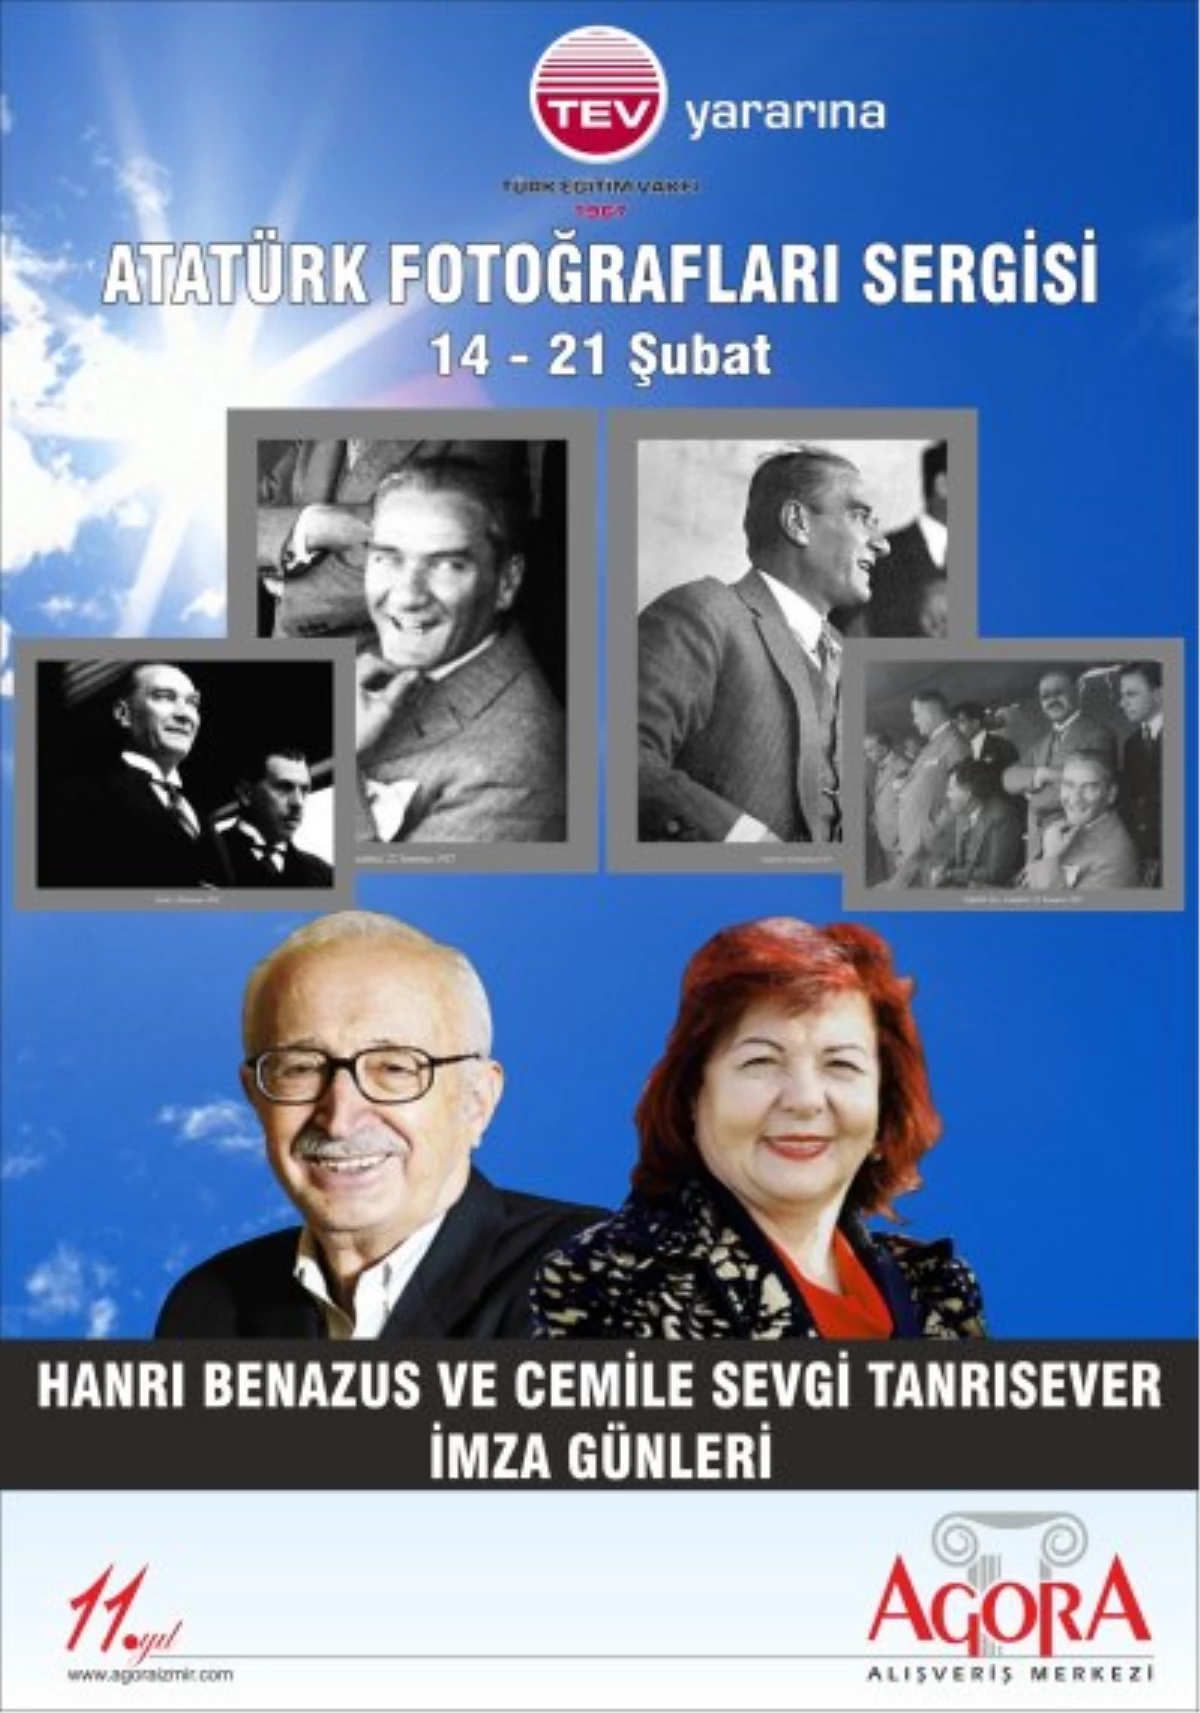 Atatürk\'ün En Özel Fotoğrafları TEV Yararına İzmir Agora AVM\'de